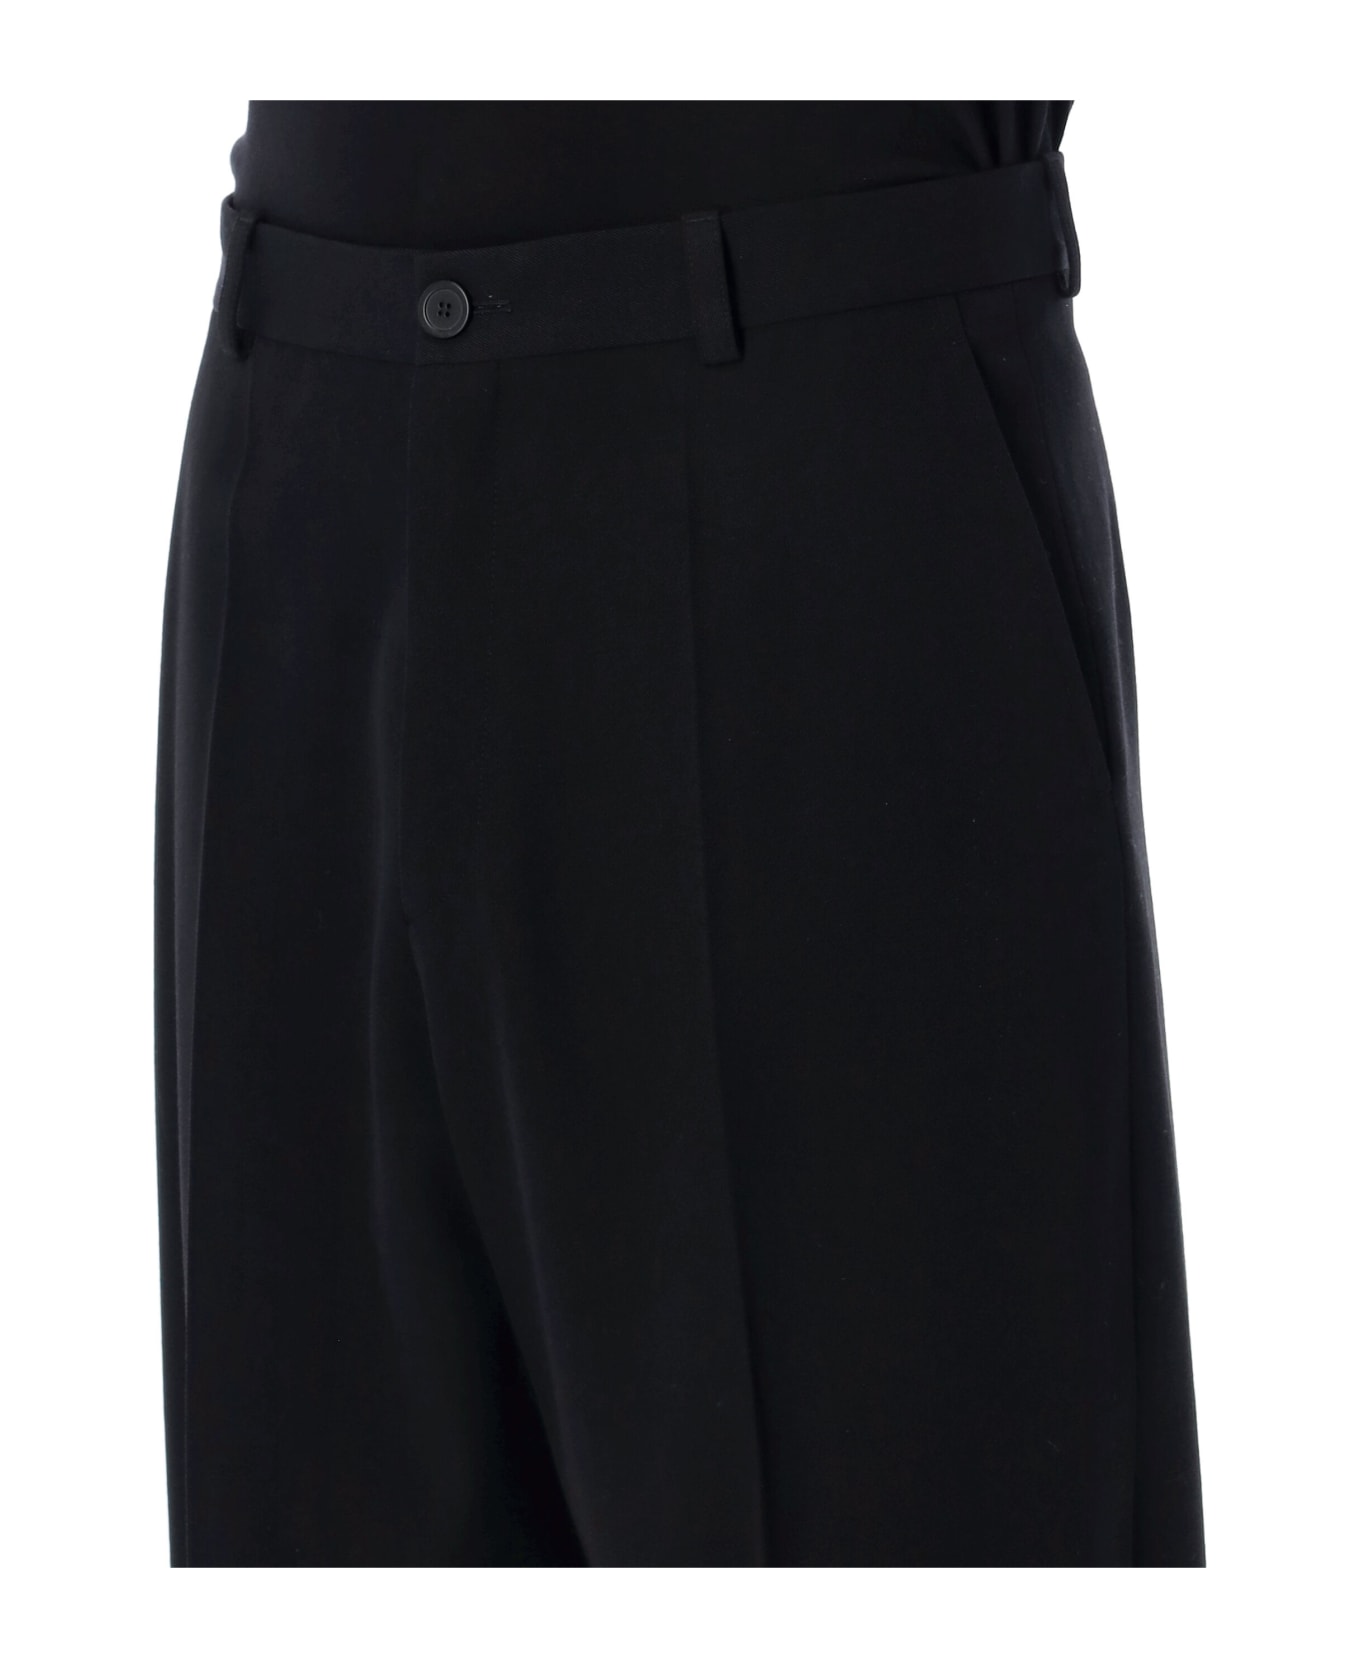 Balenciaga Pleated Tailoring Pants - Black ボトムス